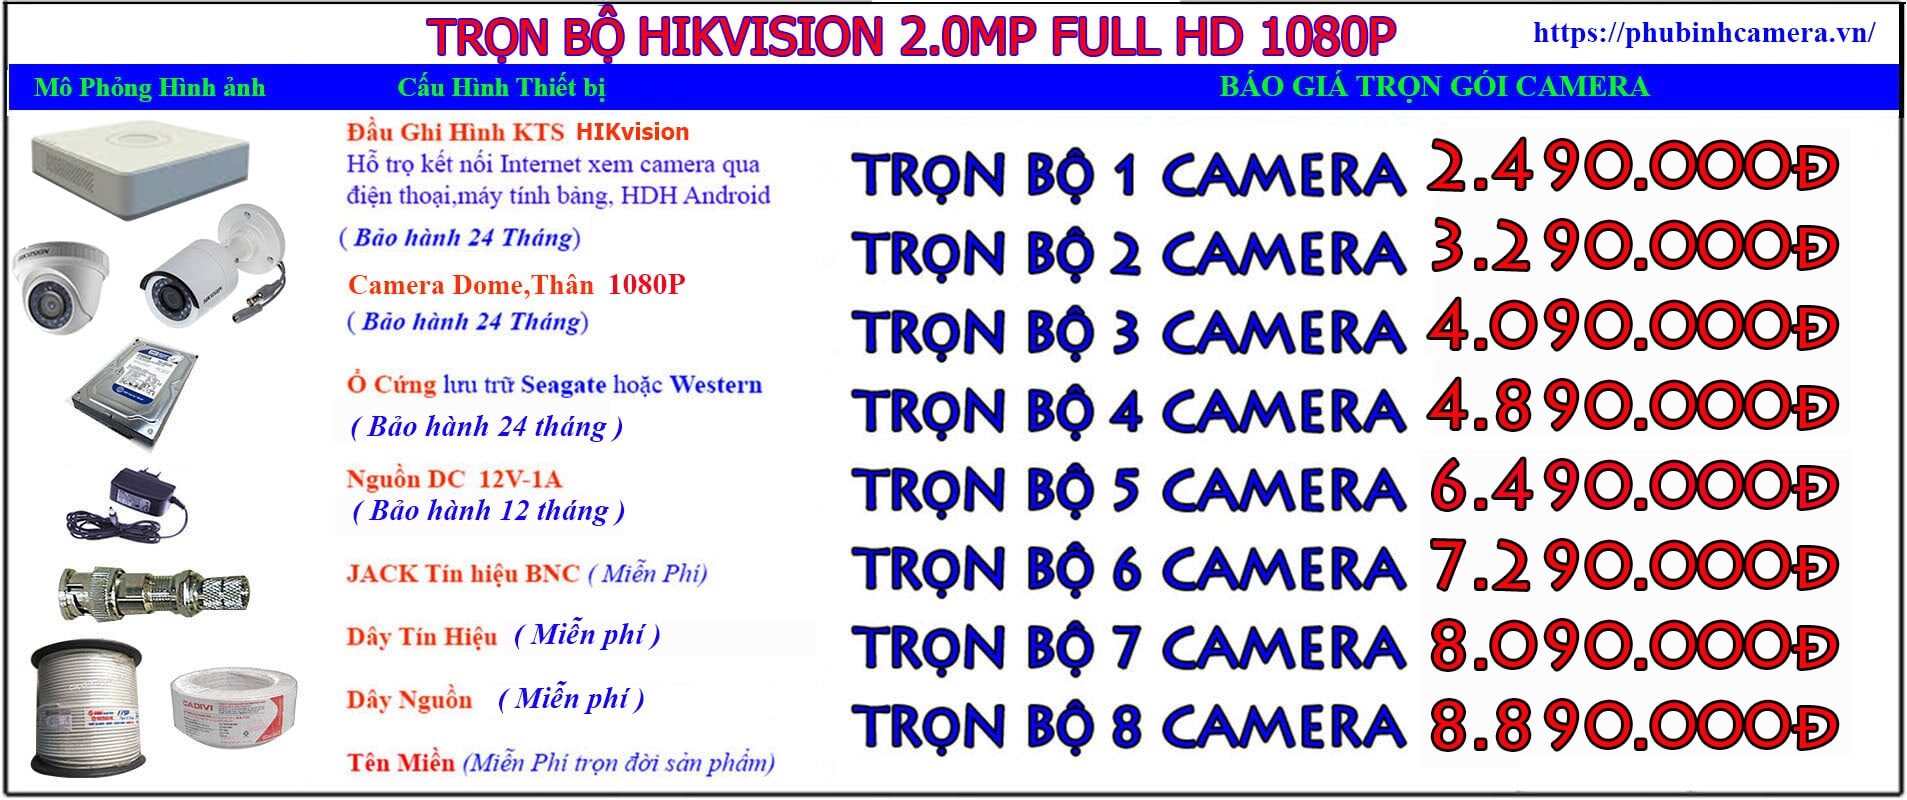 trọn bộ hikvision 2.0-1080P